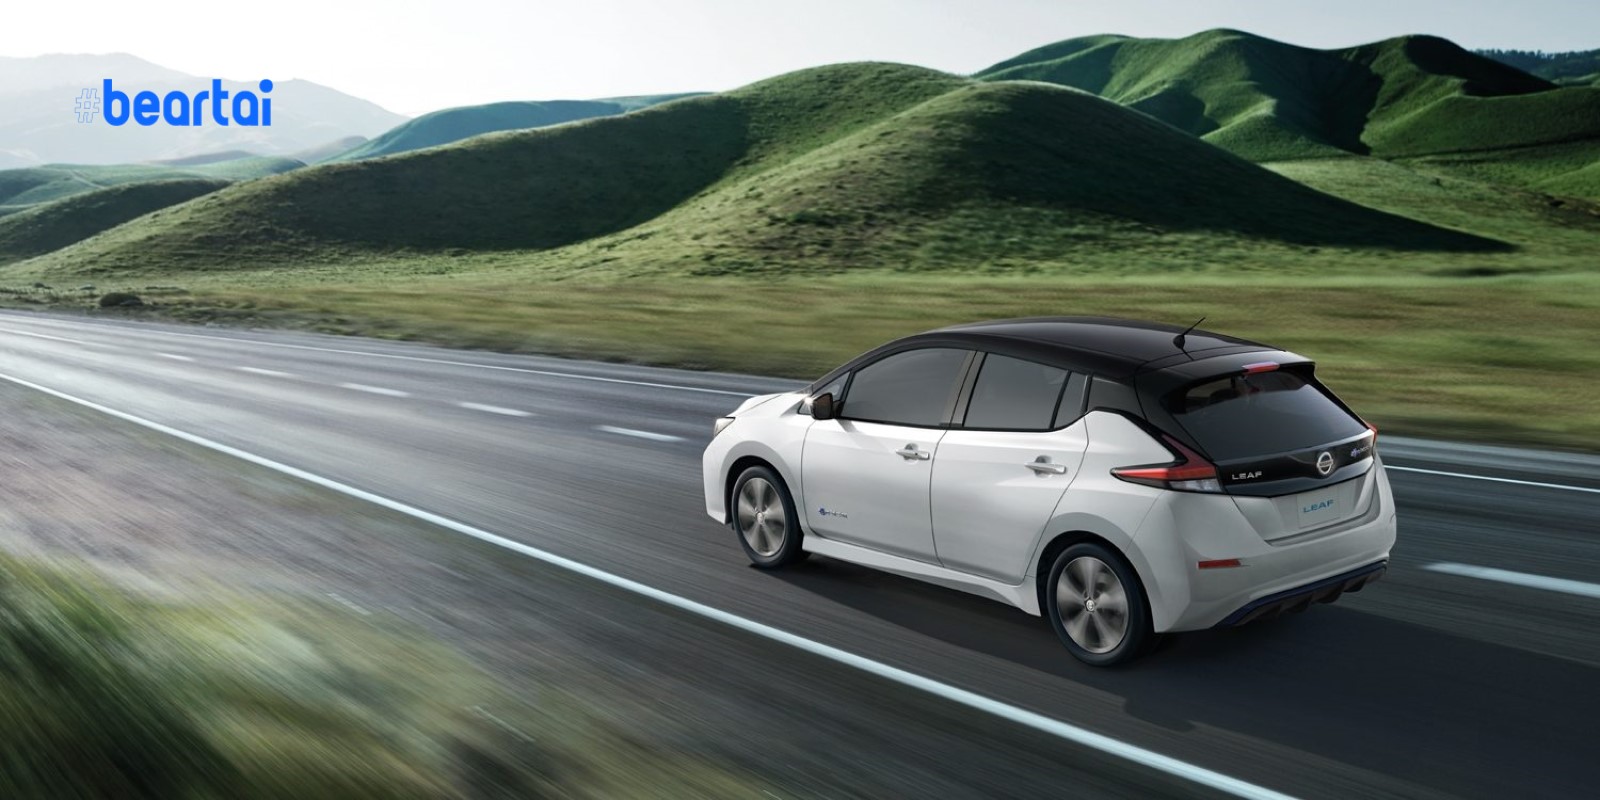 ลดแรง! Nissan LEAF รถยนต์ไฟฟ้าผลิตต่างประเทศลด 5 แสนเหลือเพียง 1.49 ล้านบาท